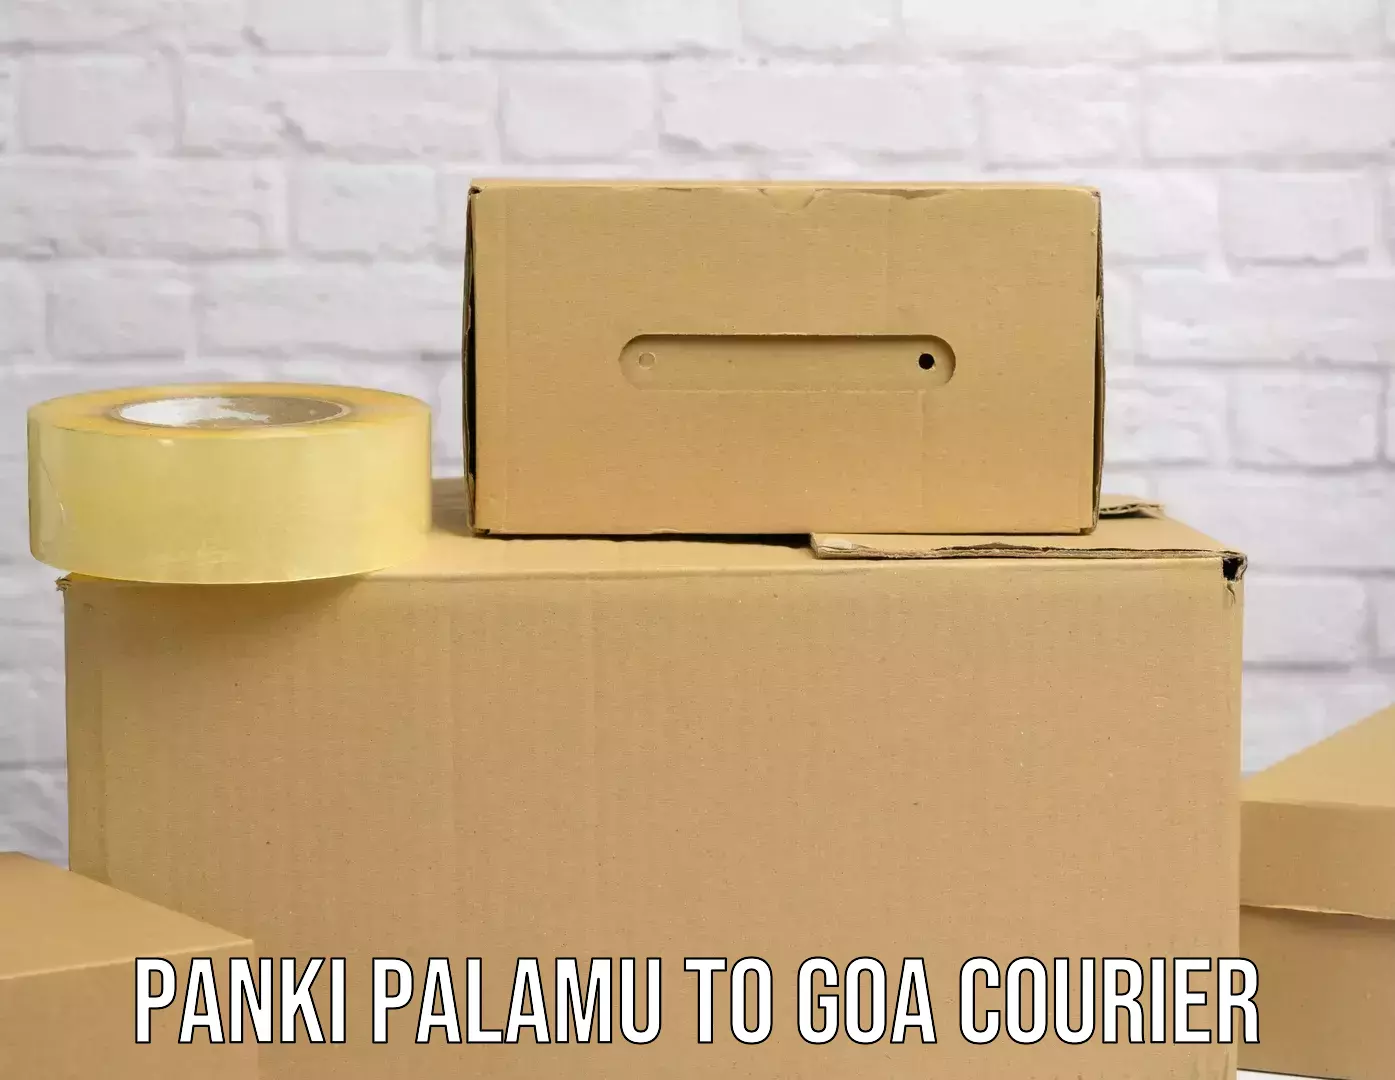 24/7 courier service Panki Palamu to Panjim